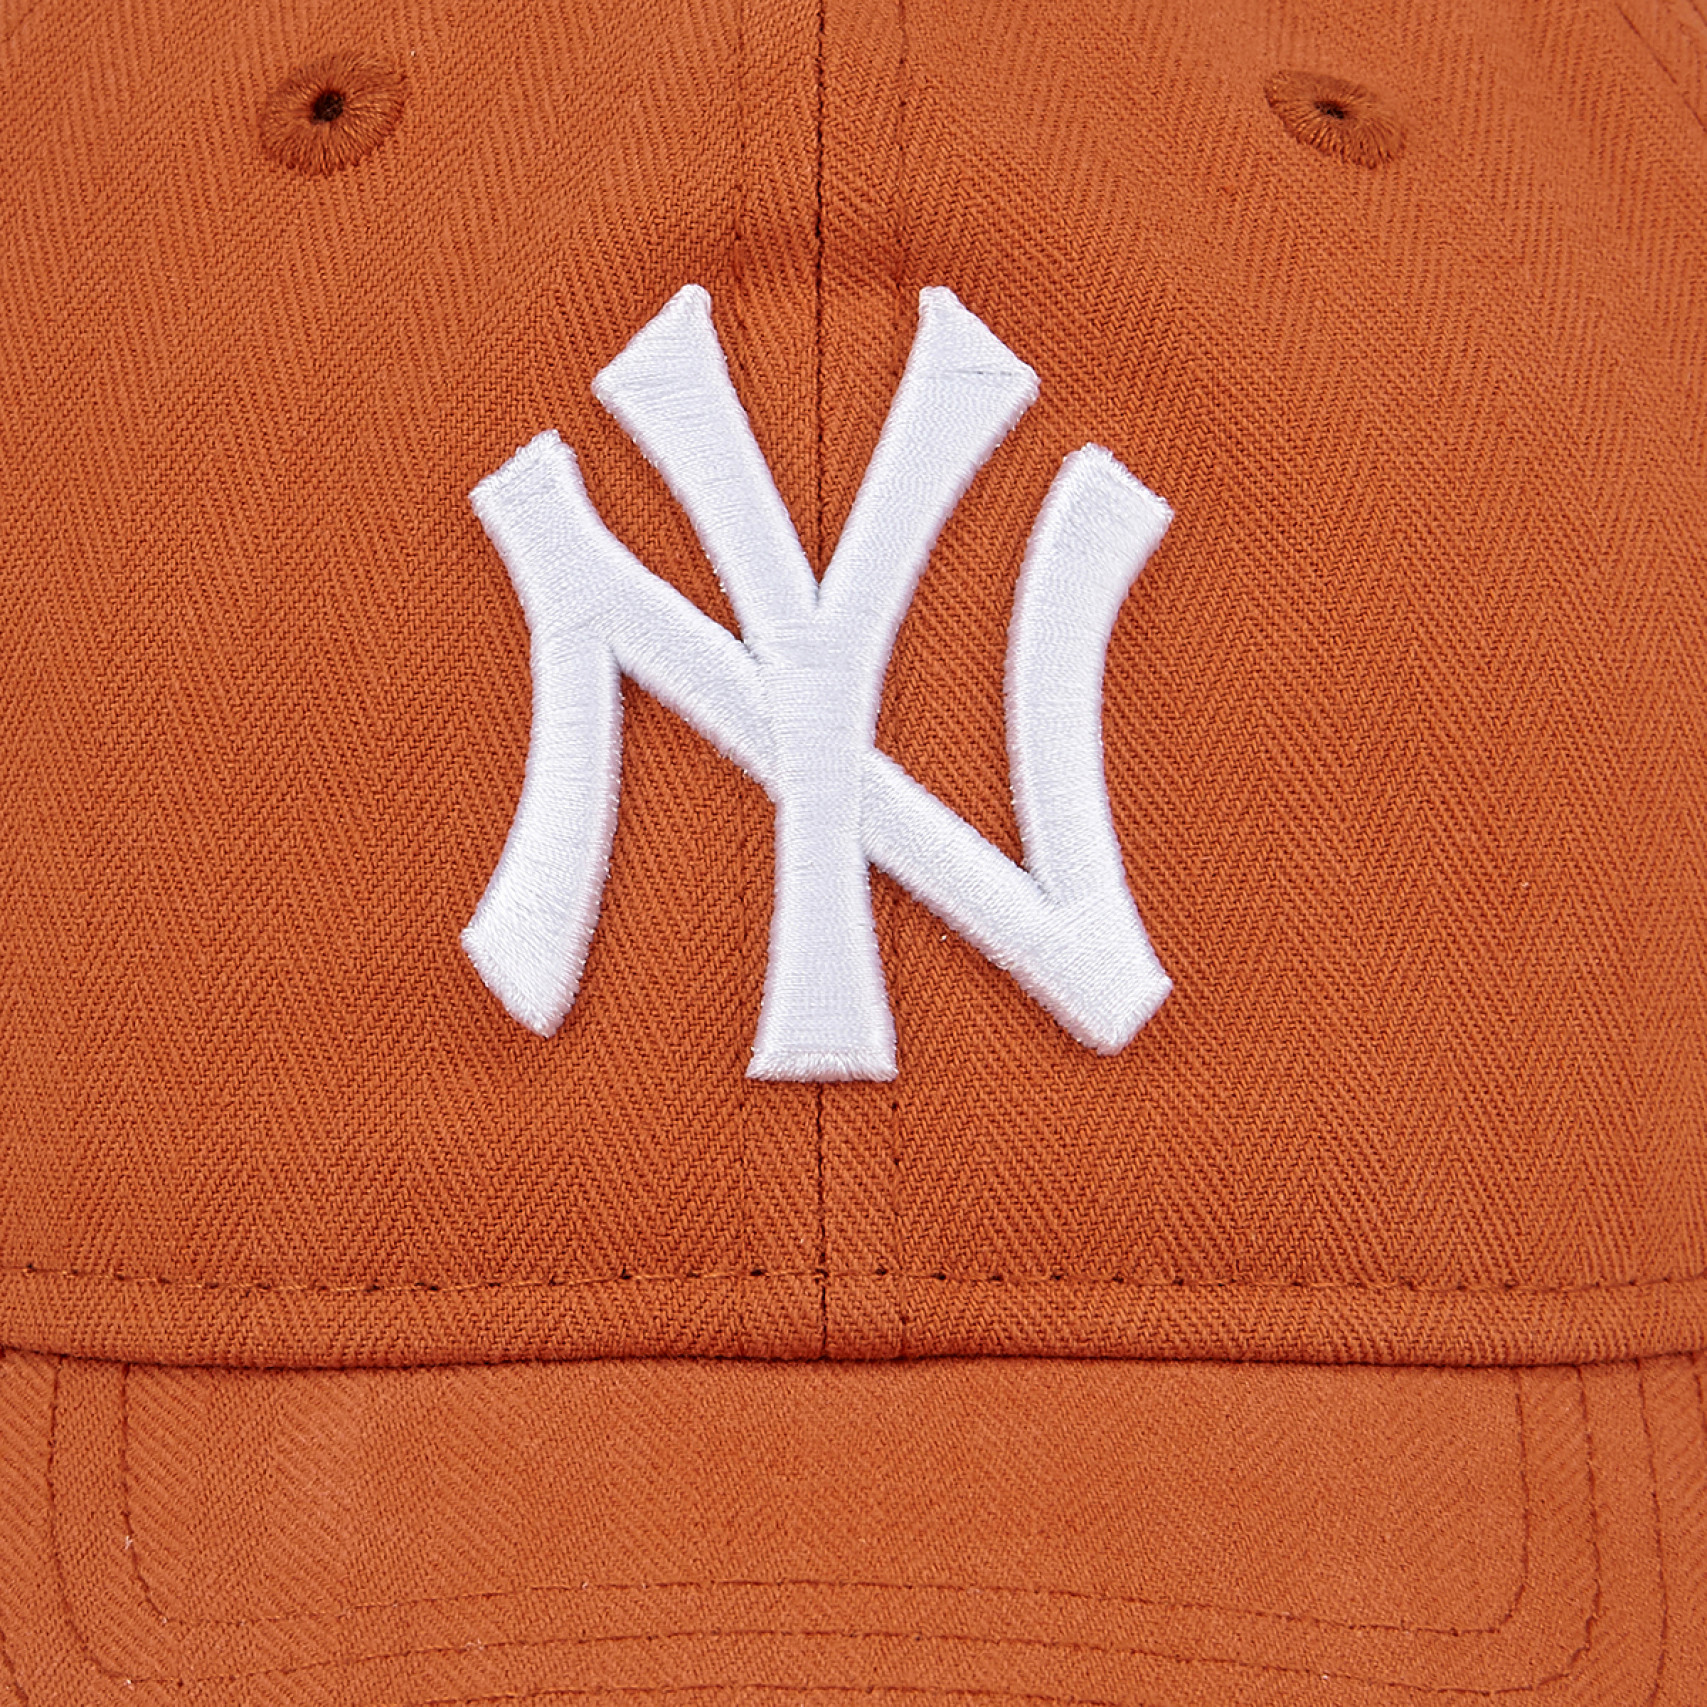 MLB 뉴욕 양키스 빈티지 헤링본 언스트럭쳐 볼캡 오렌지 / 14205932